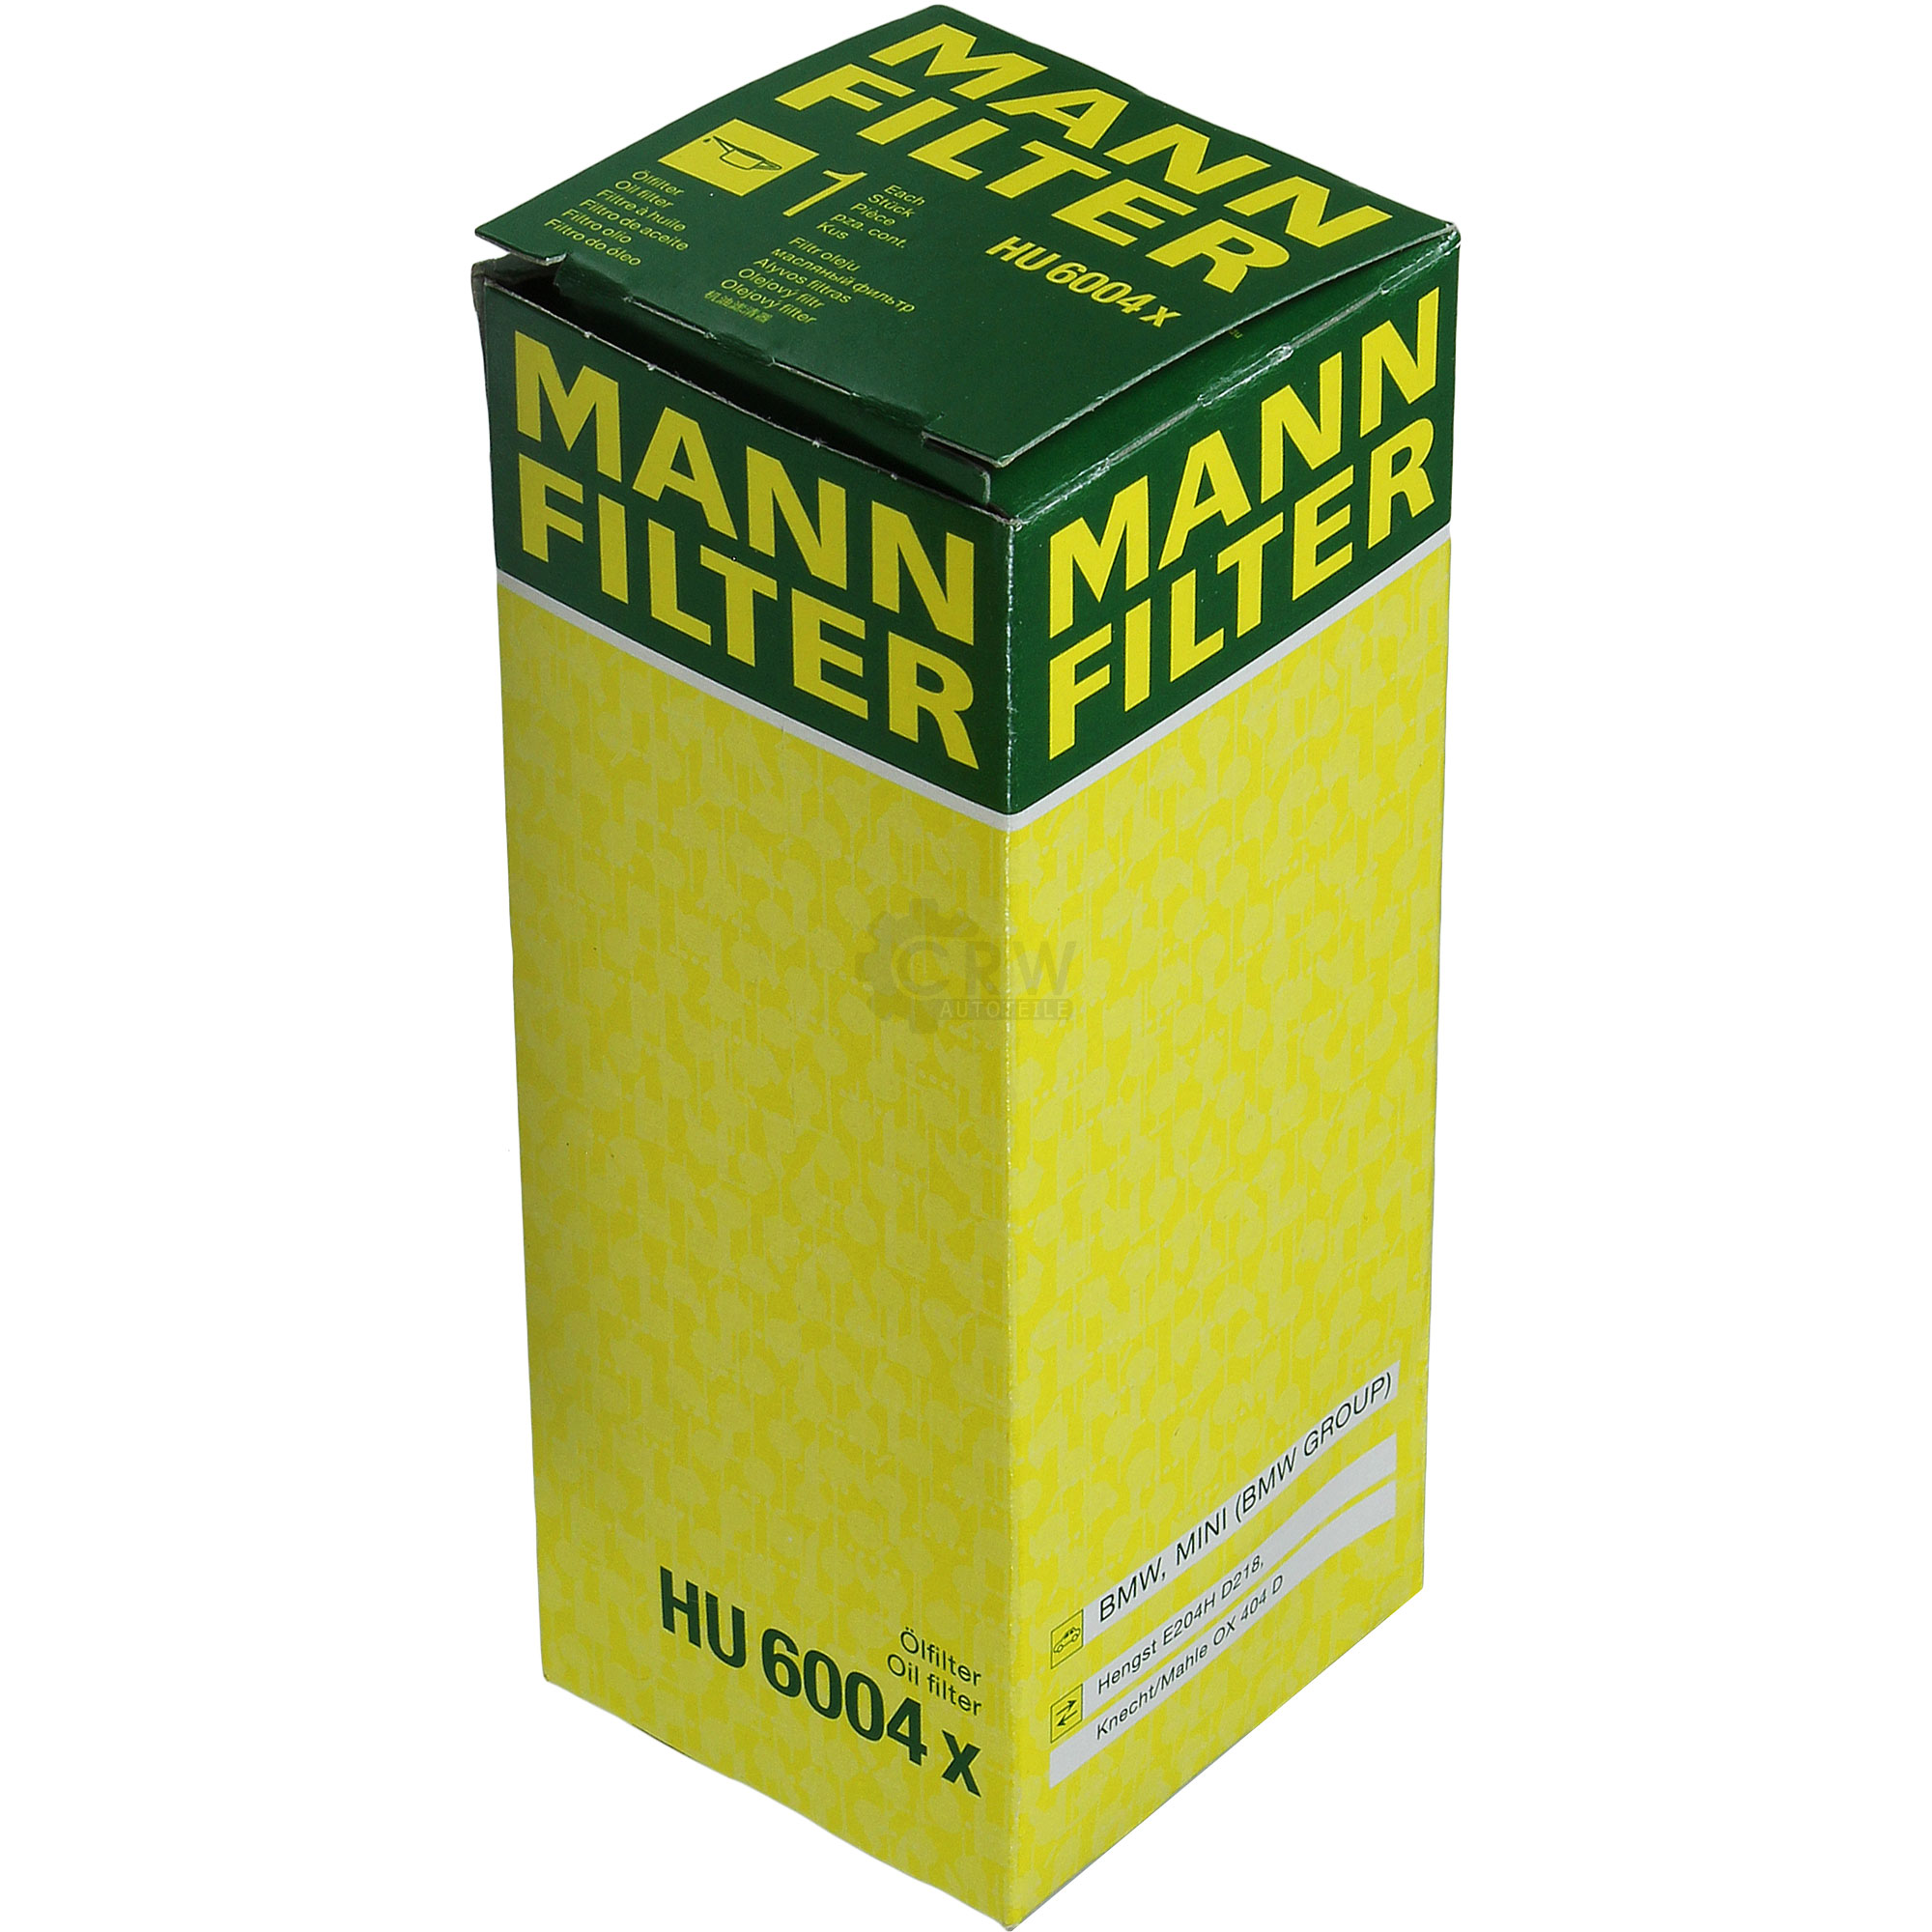 MANN-FILTER Ölfilter HU 6004 x Oil Filter